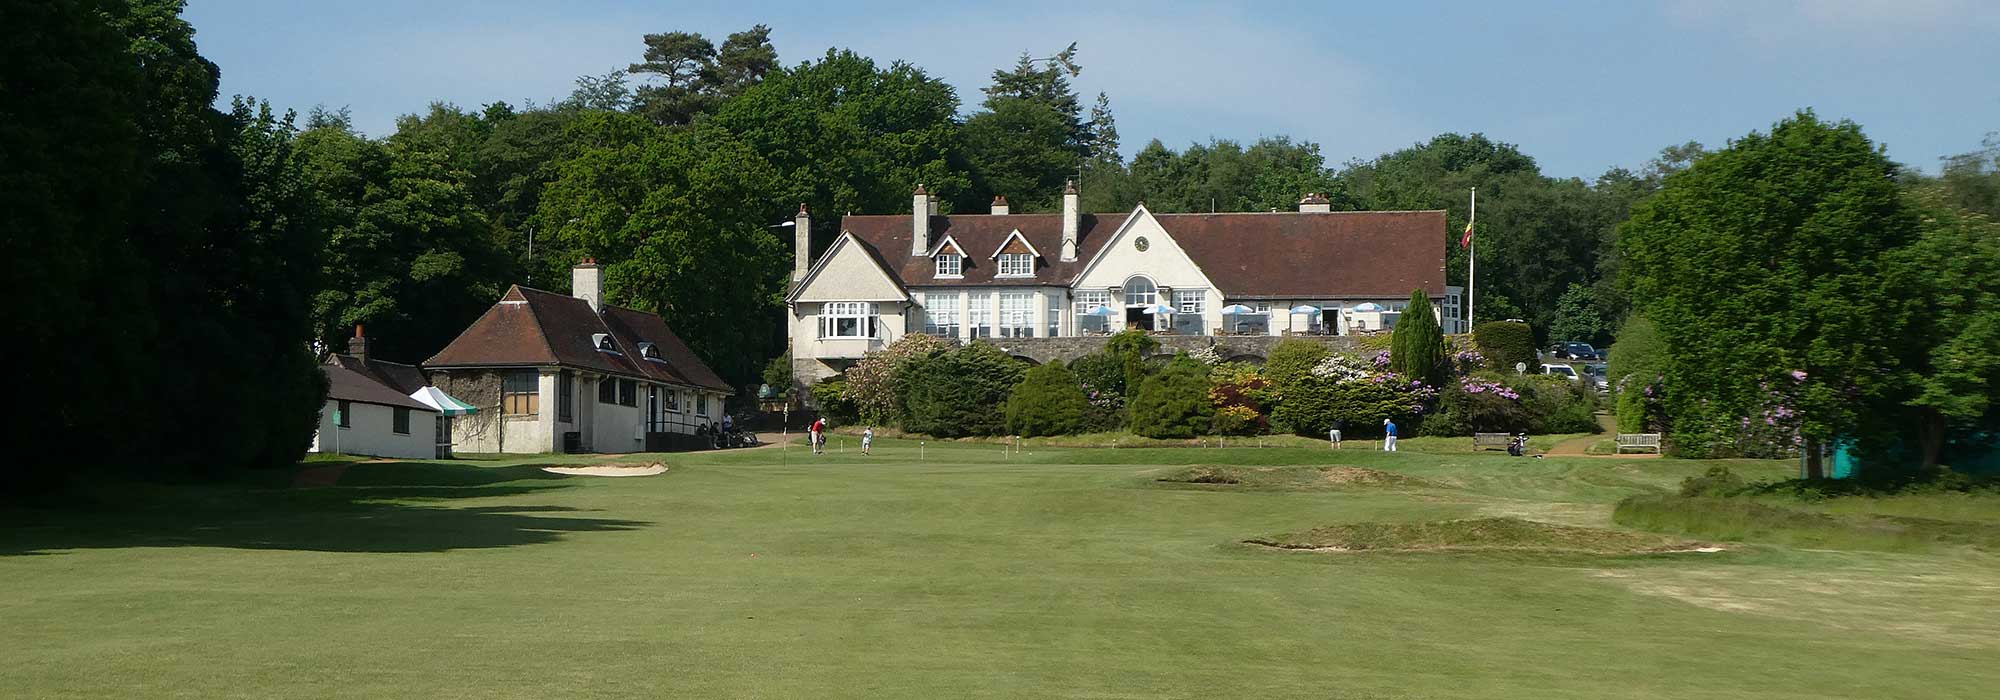 Crowborough Golf Club